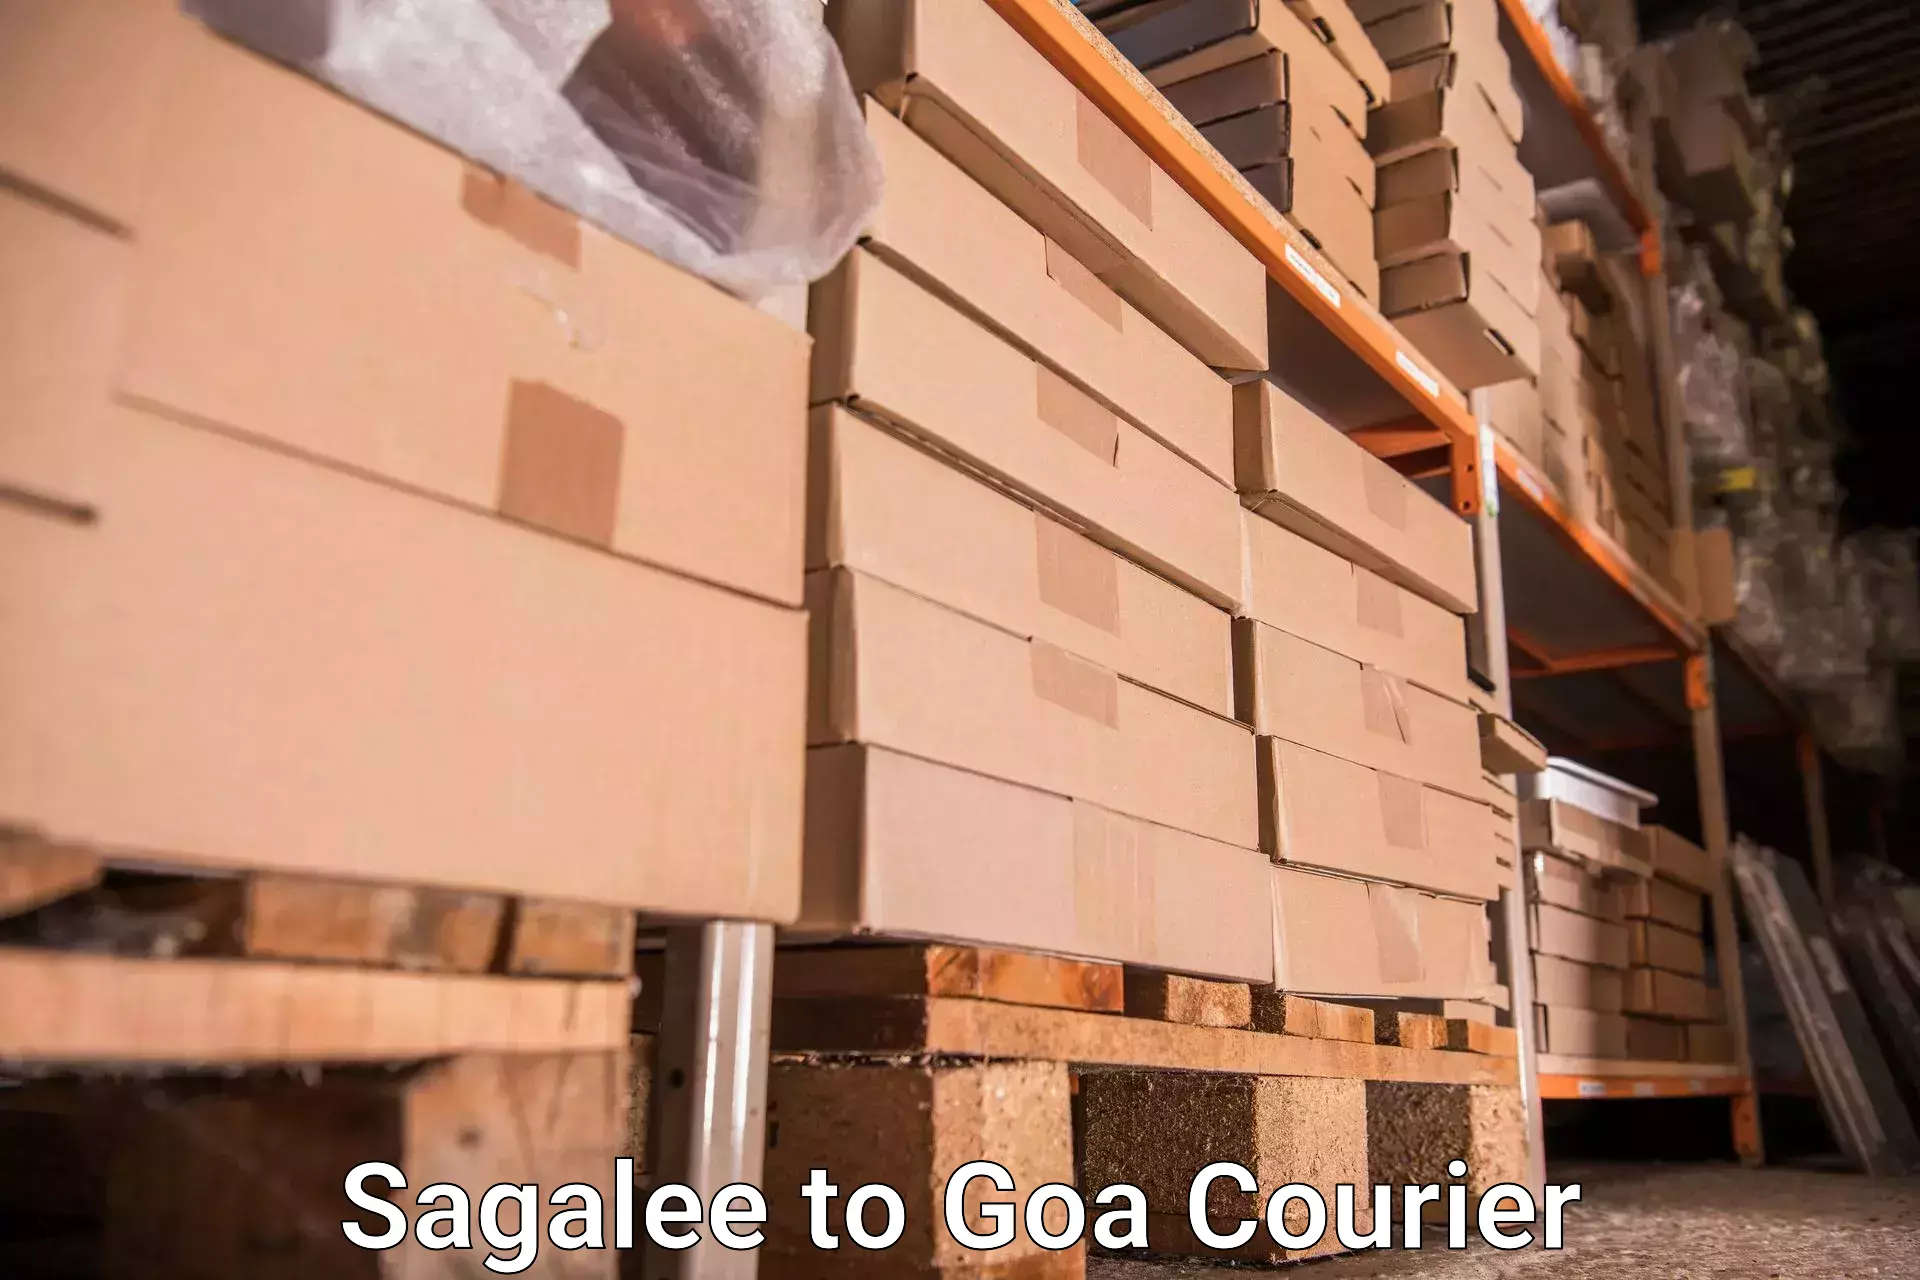 Door-to-door baggage service Sagalee to Goa